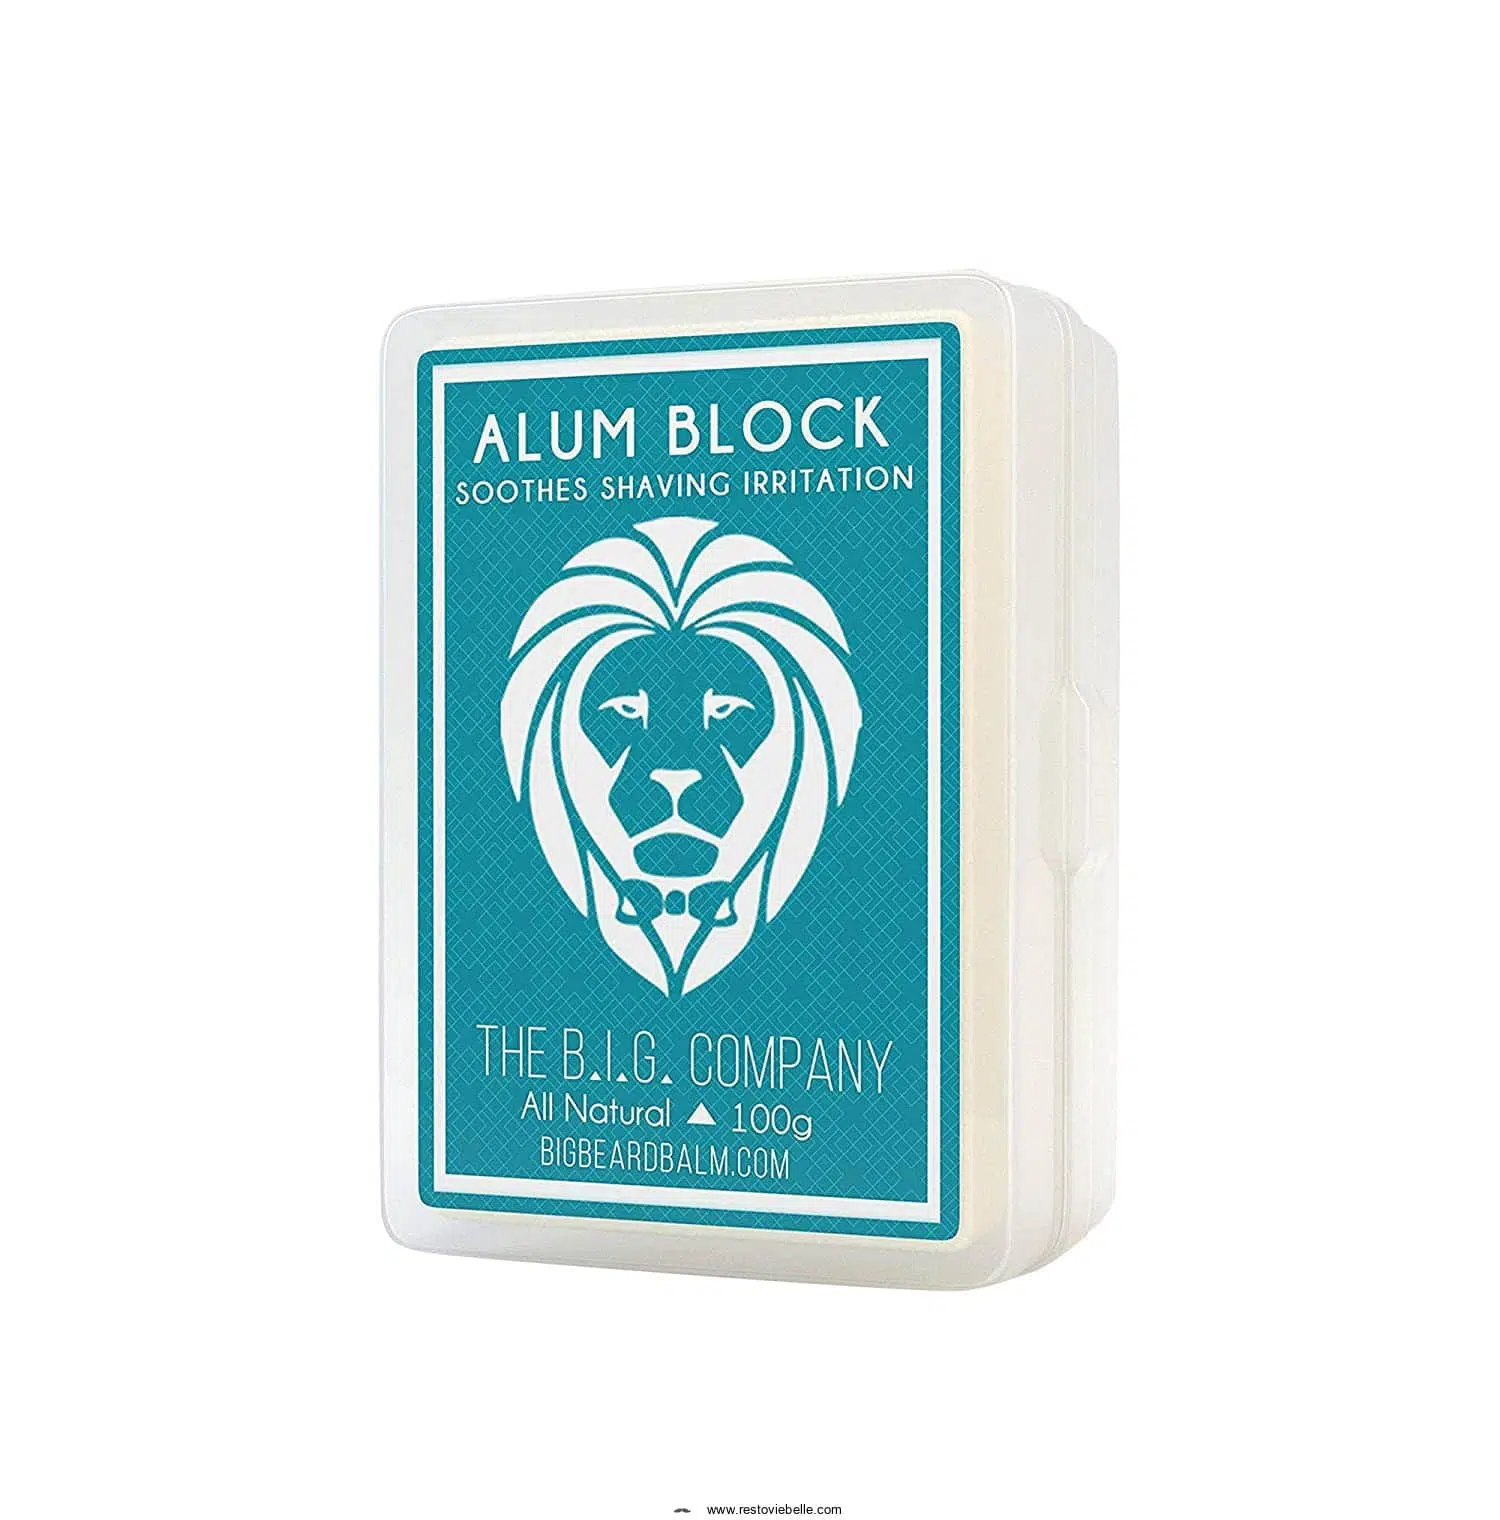 The B.i.g. Company Alum Block